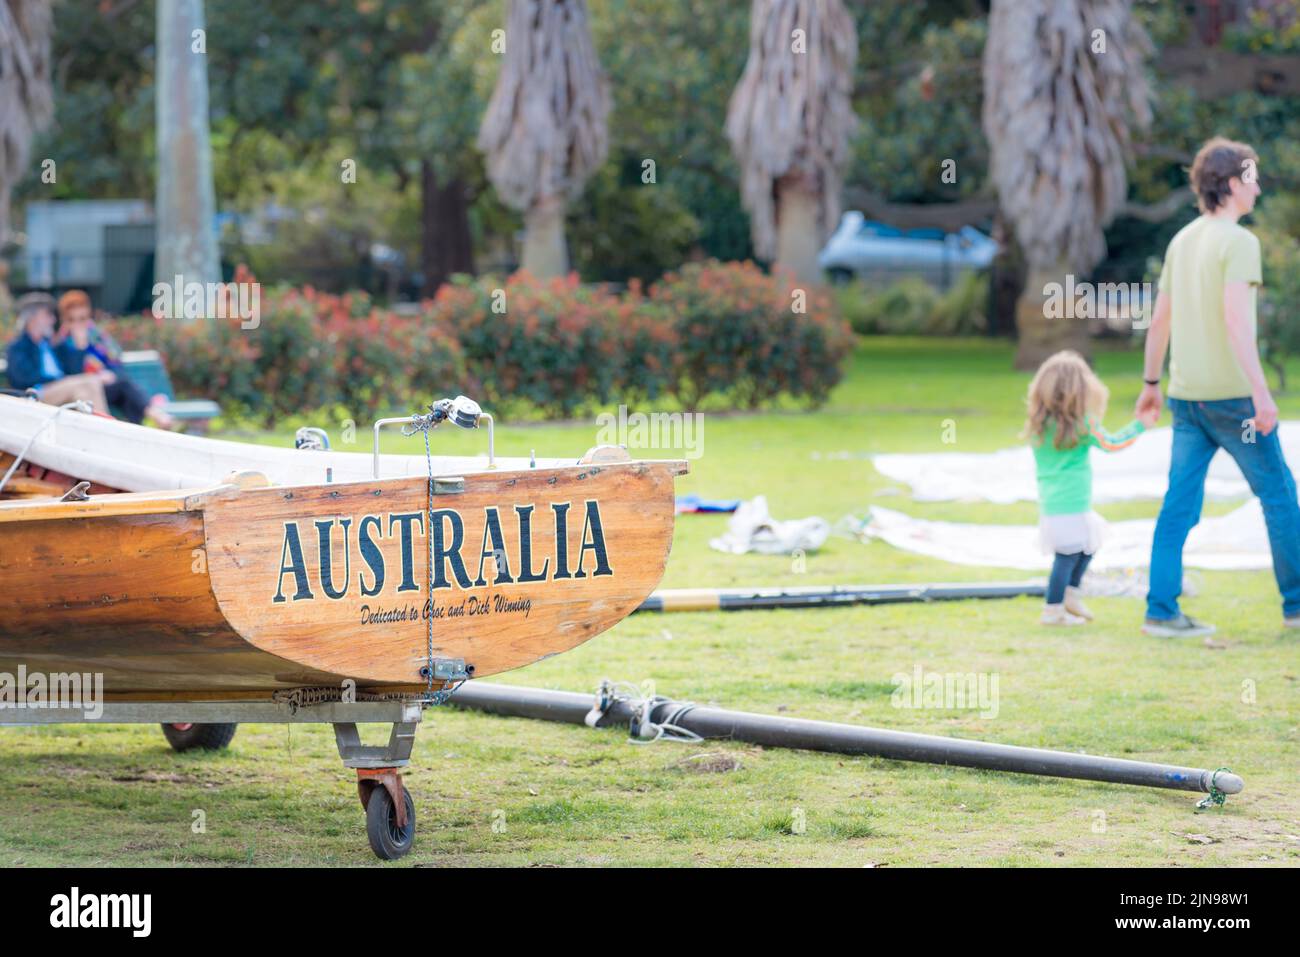 Parte del Sydney Flying Squadron, club de botes abiertos en Kirribilli, Sydney, formado en 1891, 'Australia' es un barco de carreras tradicional de madera de 18ft skiff Foto de stock